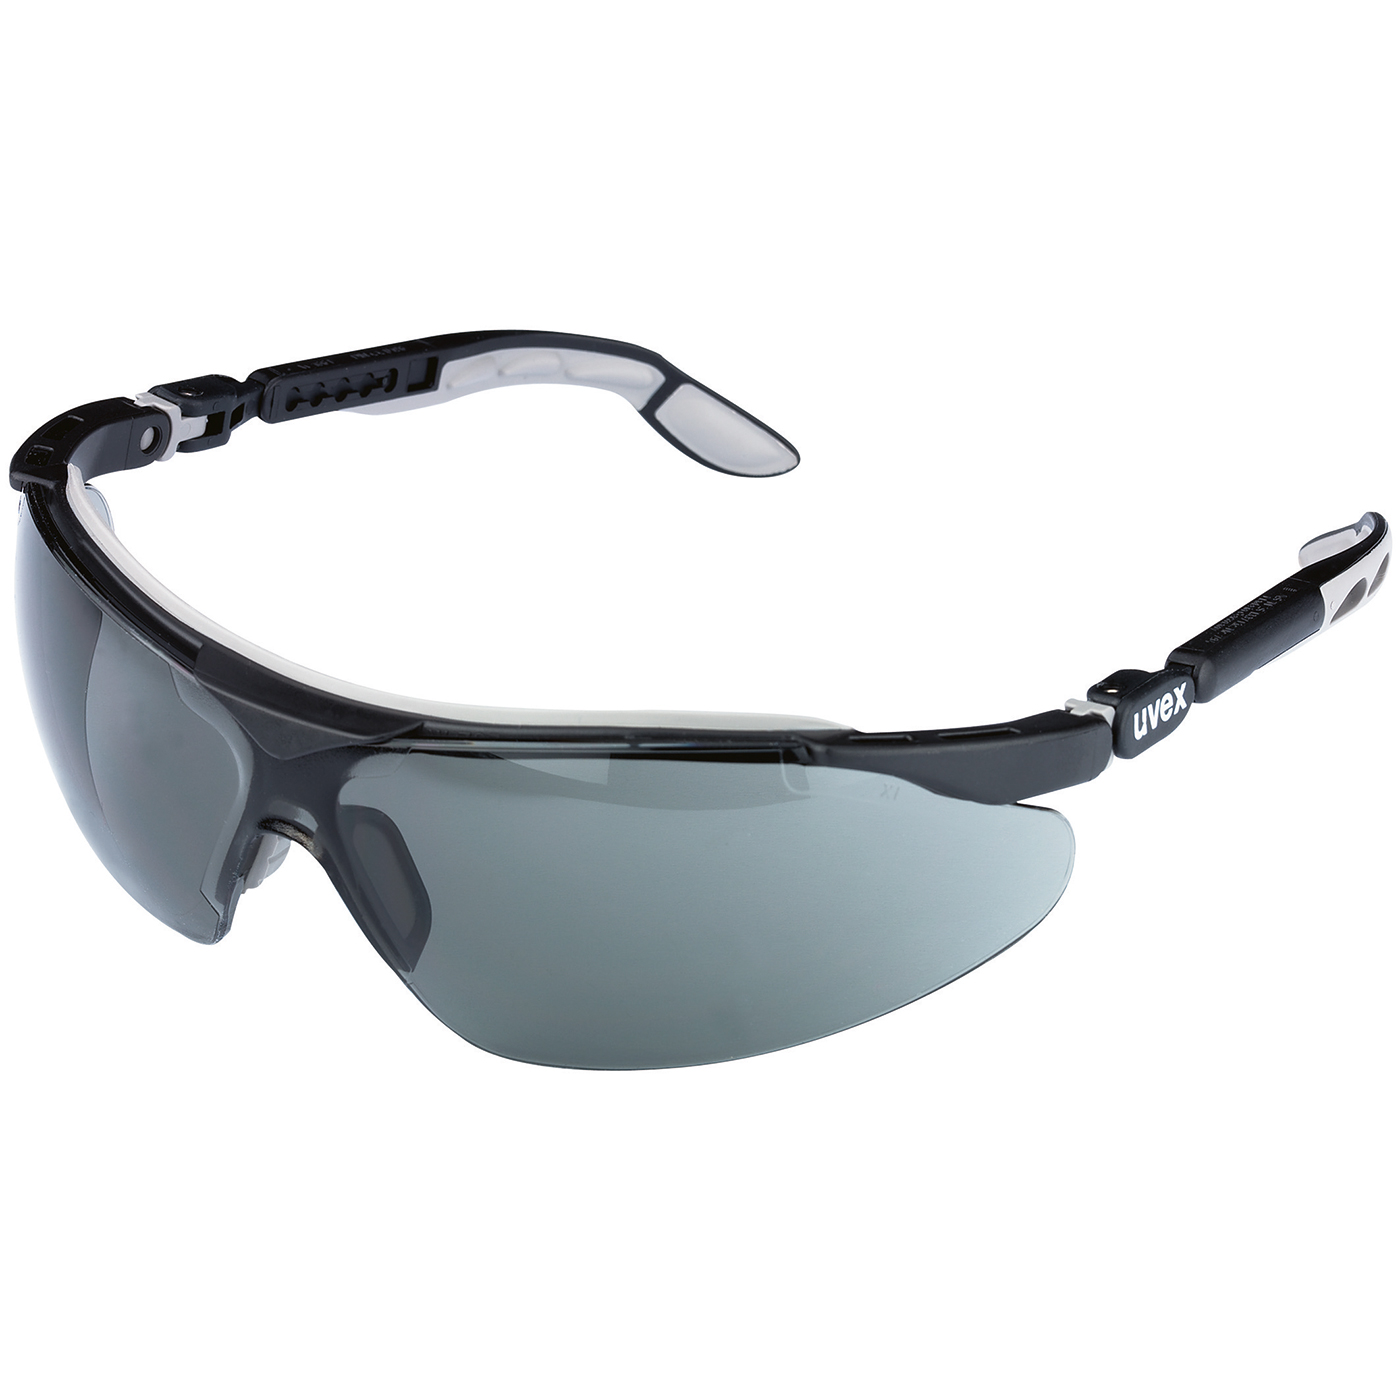 uvex iSpec Comfort Fit Schutzbrille,Scheibe grau,F. schwarz/grau - 1 Stück